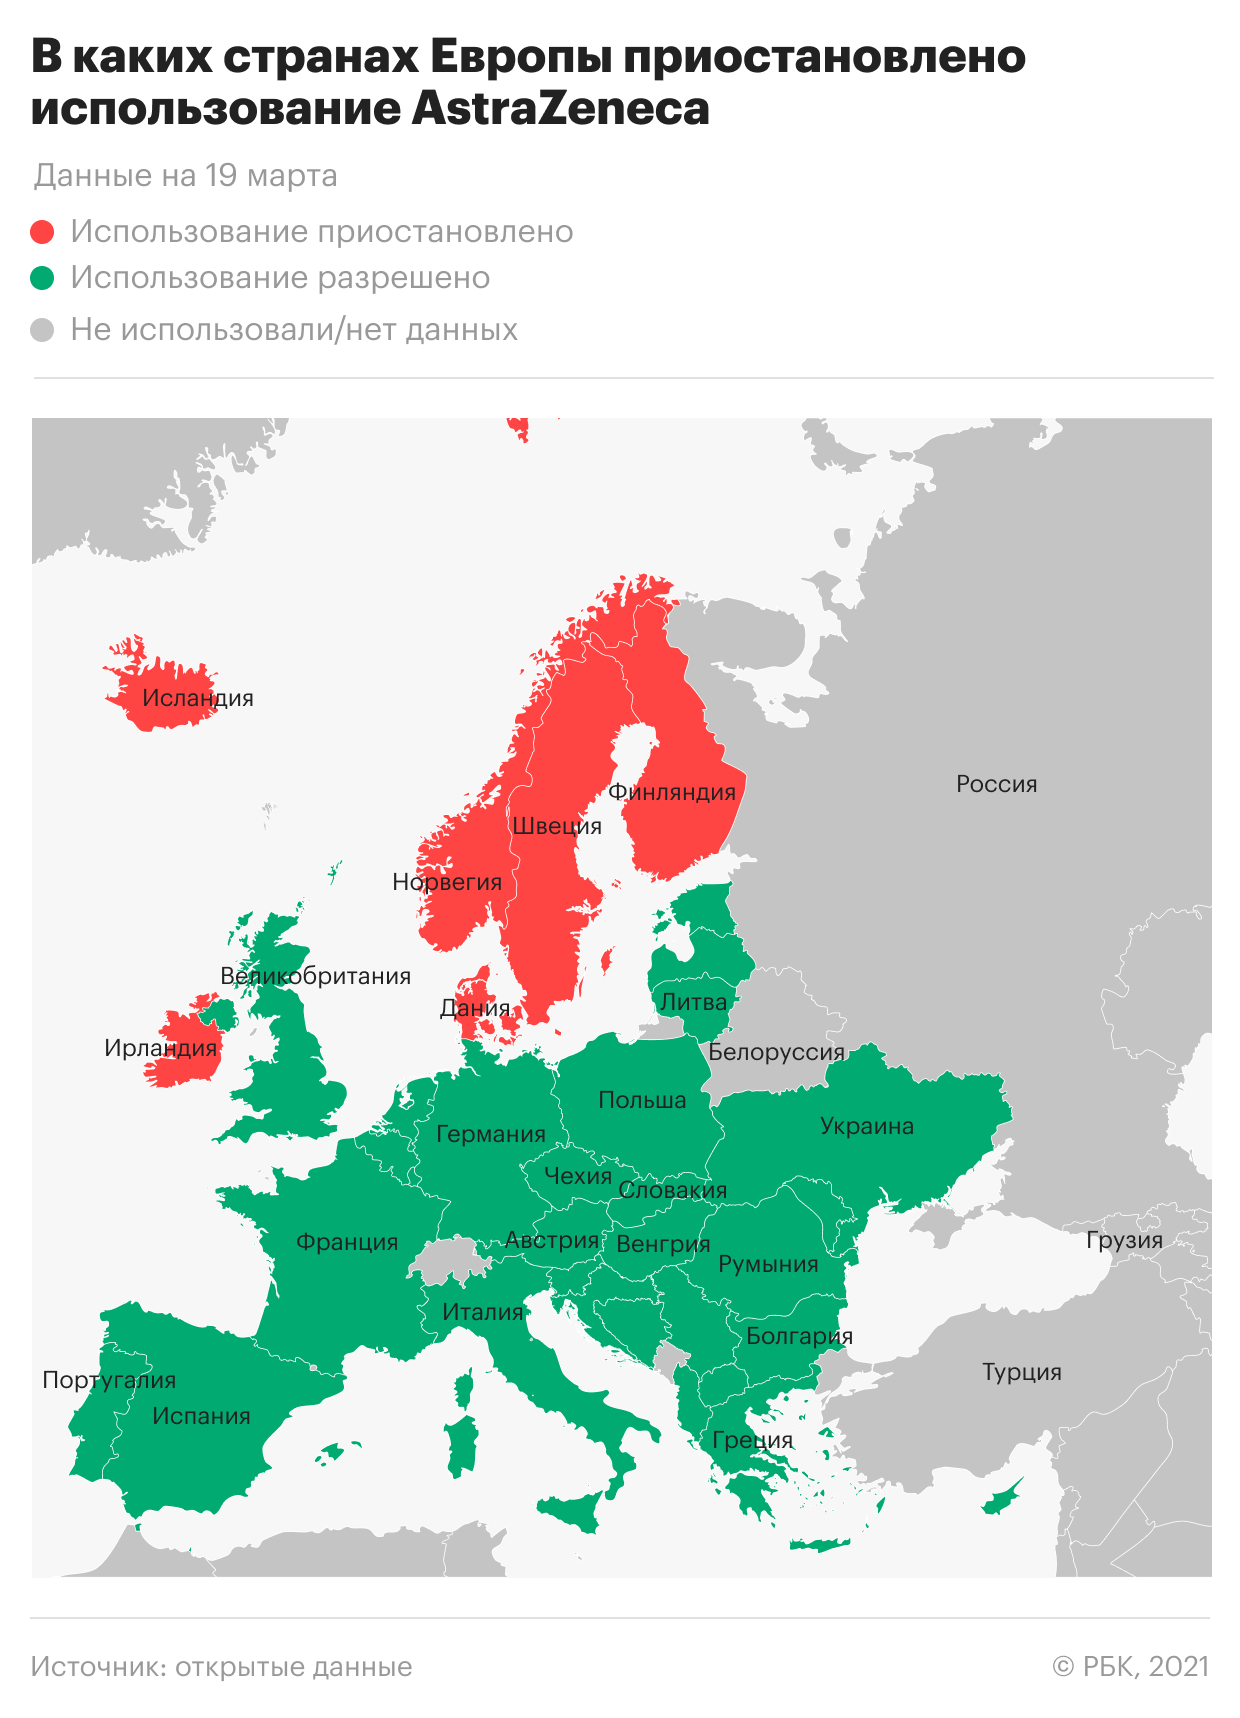 Страны ЕС приостанавливают использование вакцины AstraZeneca. Главное